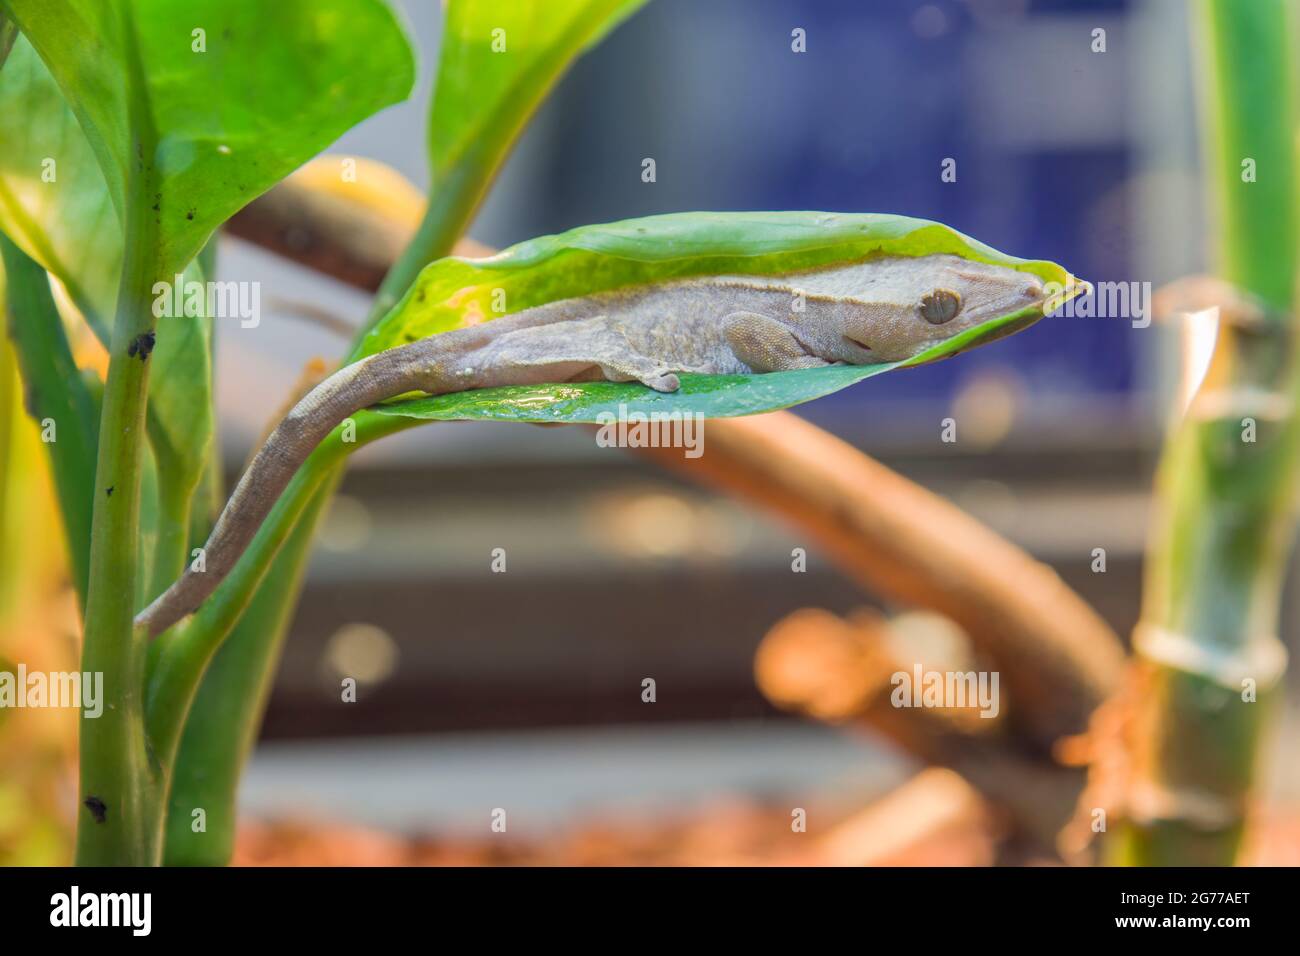 Un bébé gecko (Correlophus ciliatus) dort sur la feuille. C'est une espèce de gecko originaire du sud de la Nouvelle-Calédonie. Banque D'Images